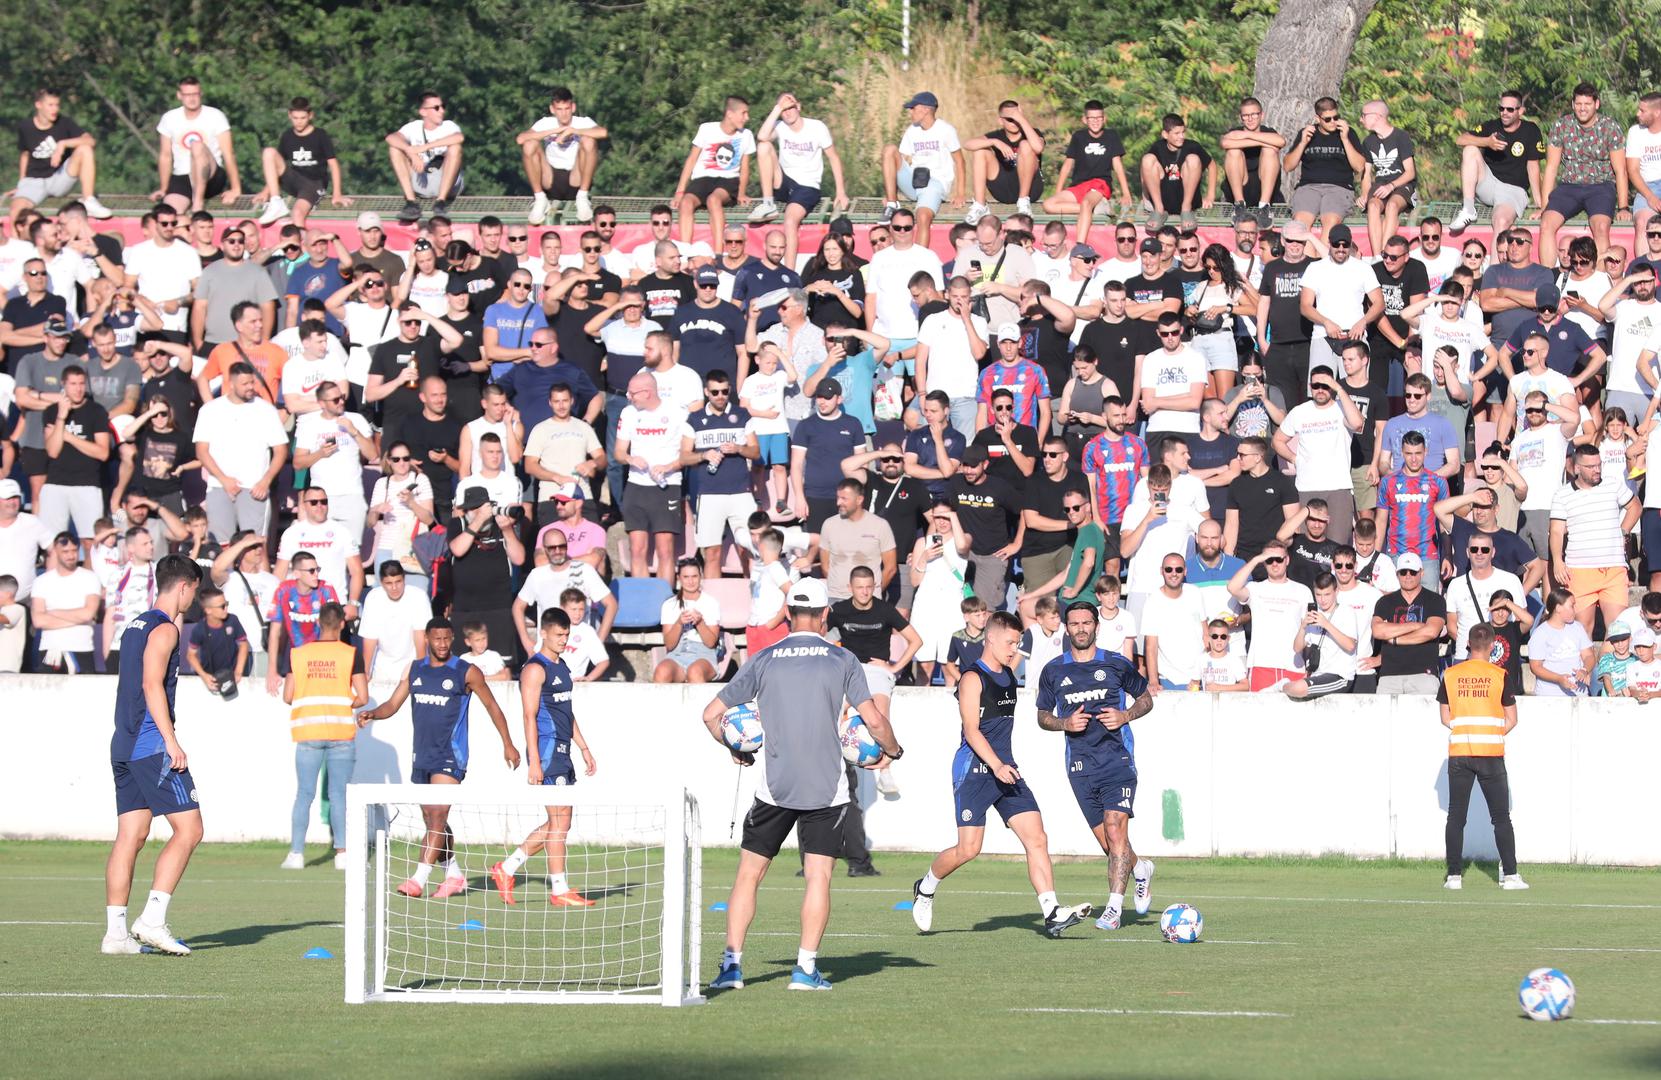 Nogometaši Hajduka trenirali su pred publikom na pomoćnom terenu u Poljudu